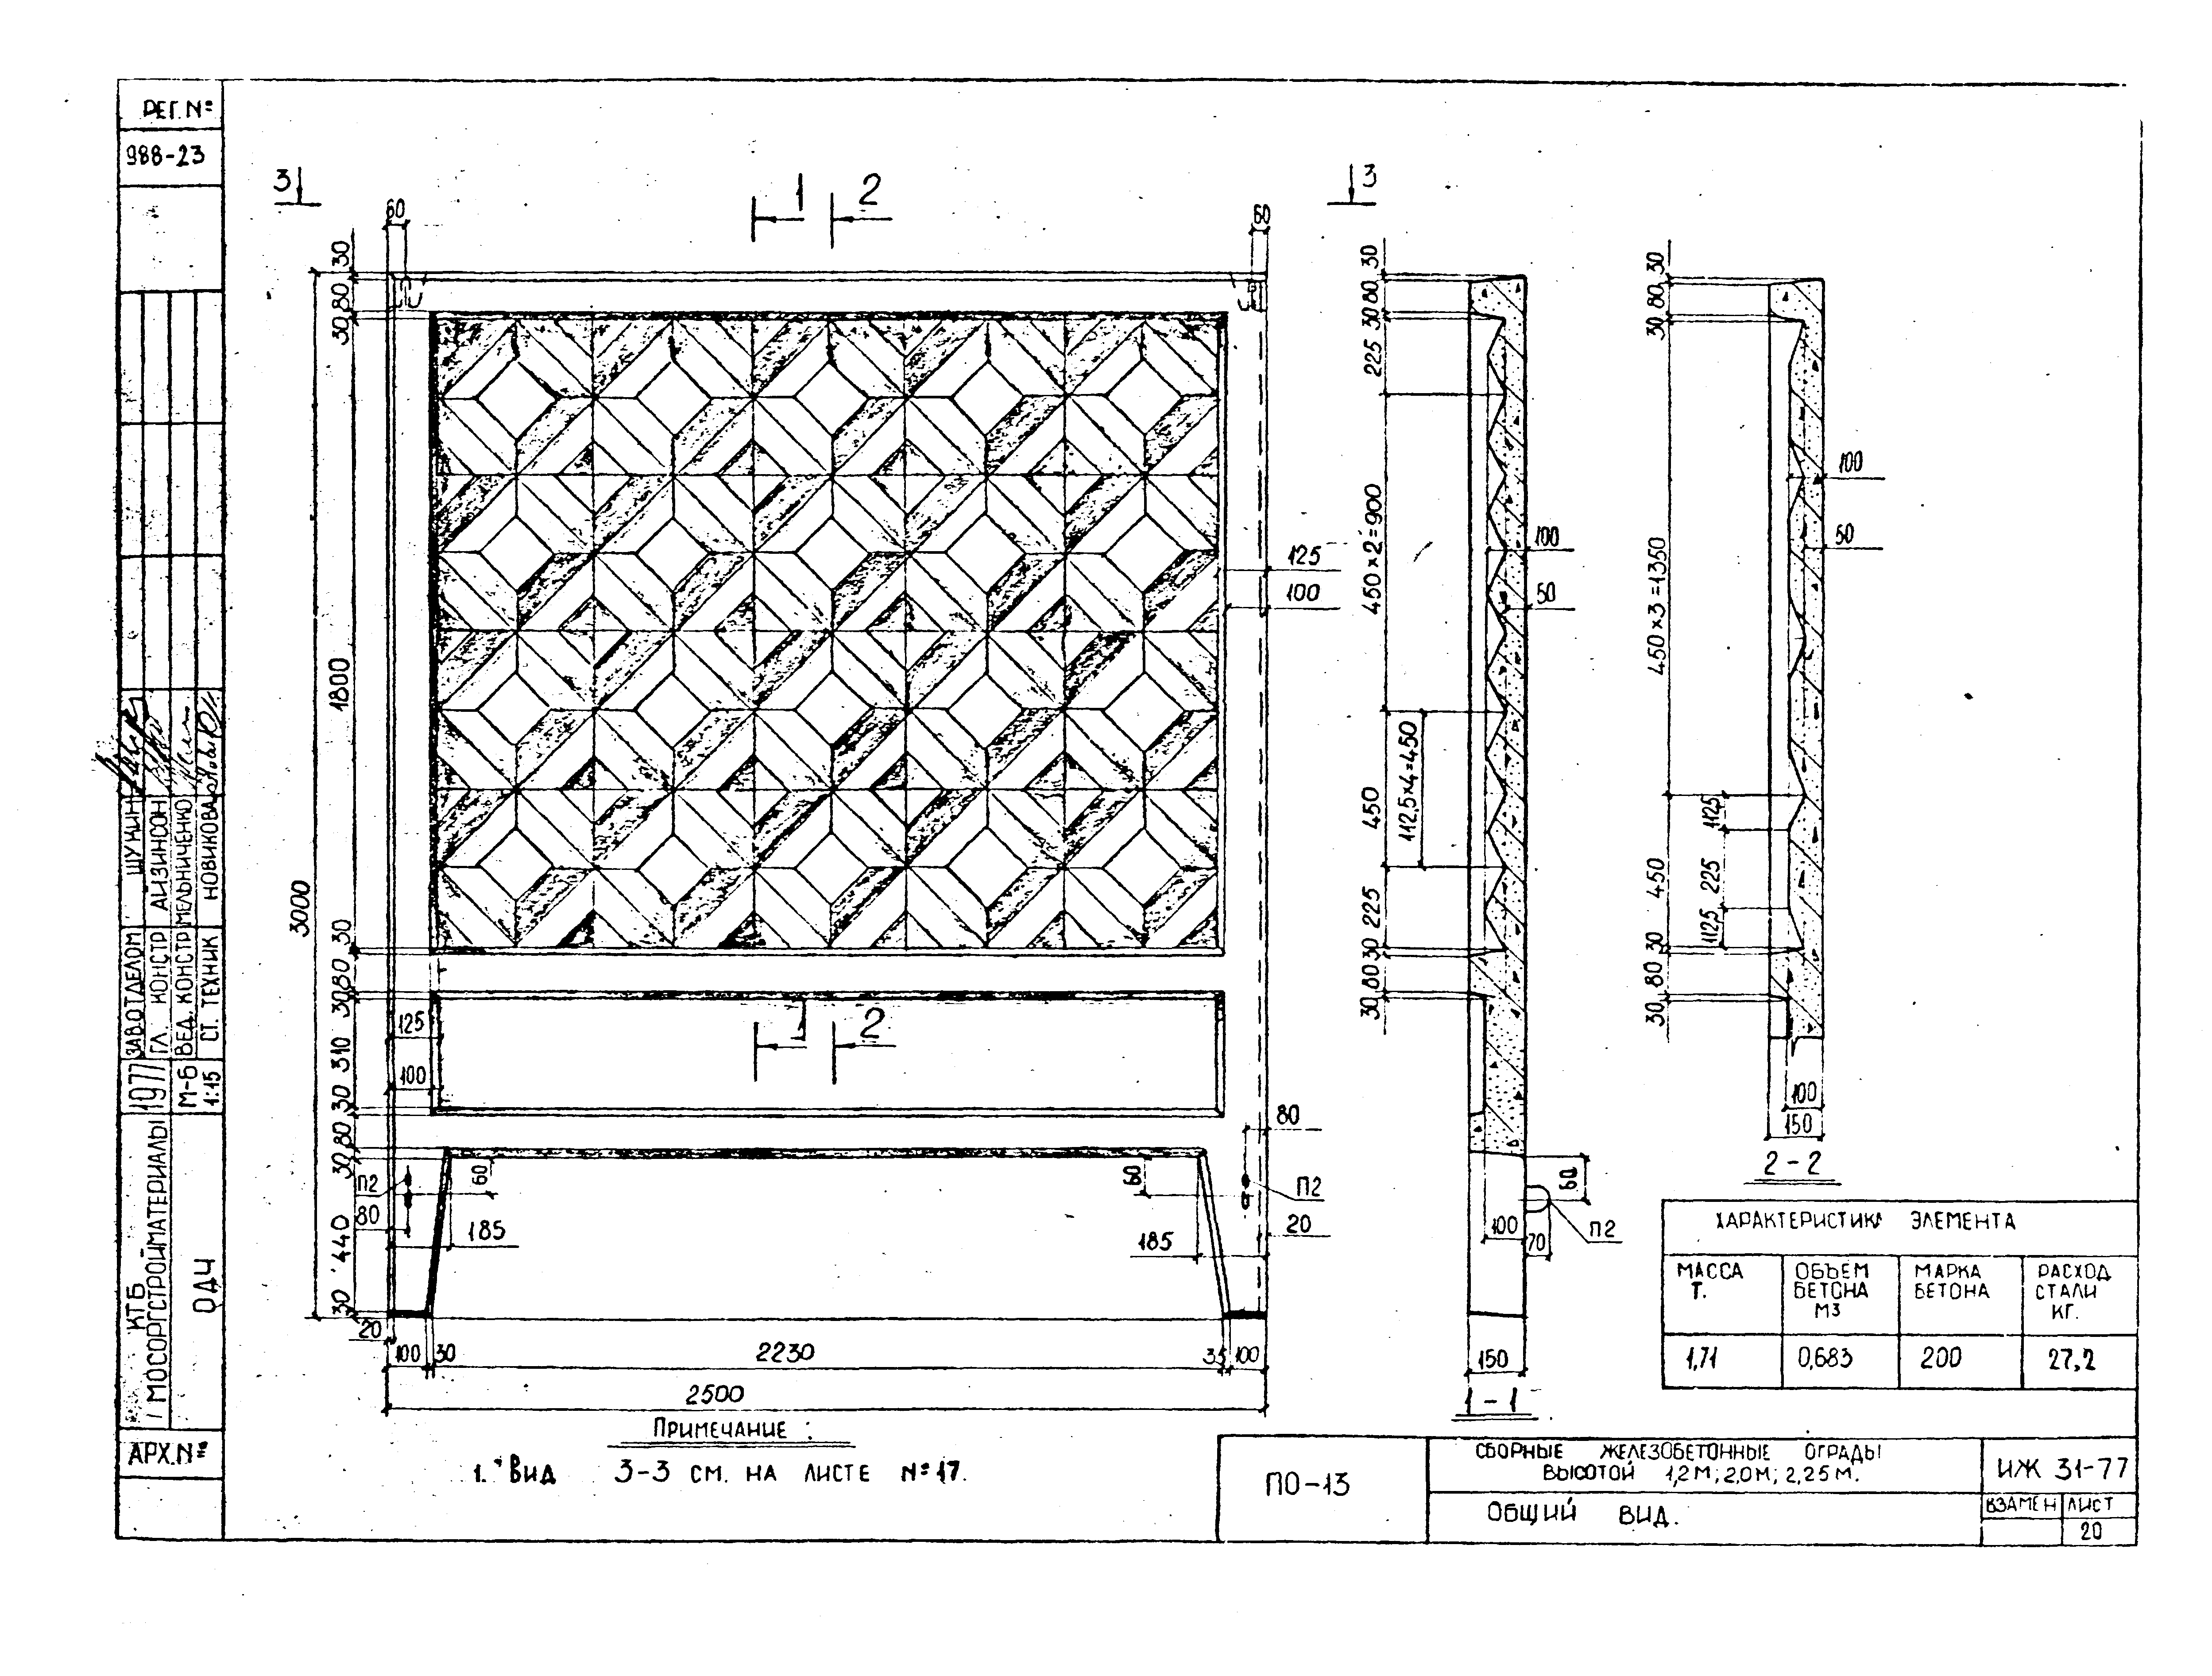 Железобетонный забор (жби): размеры сборных панелей декоративного ограждения